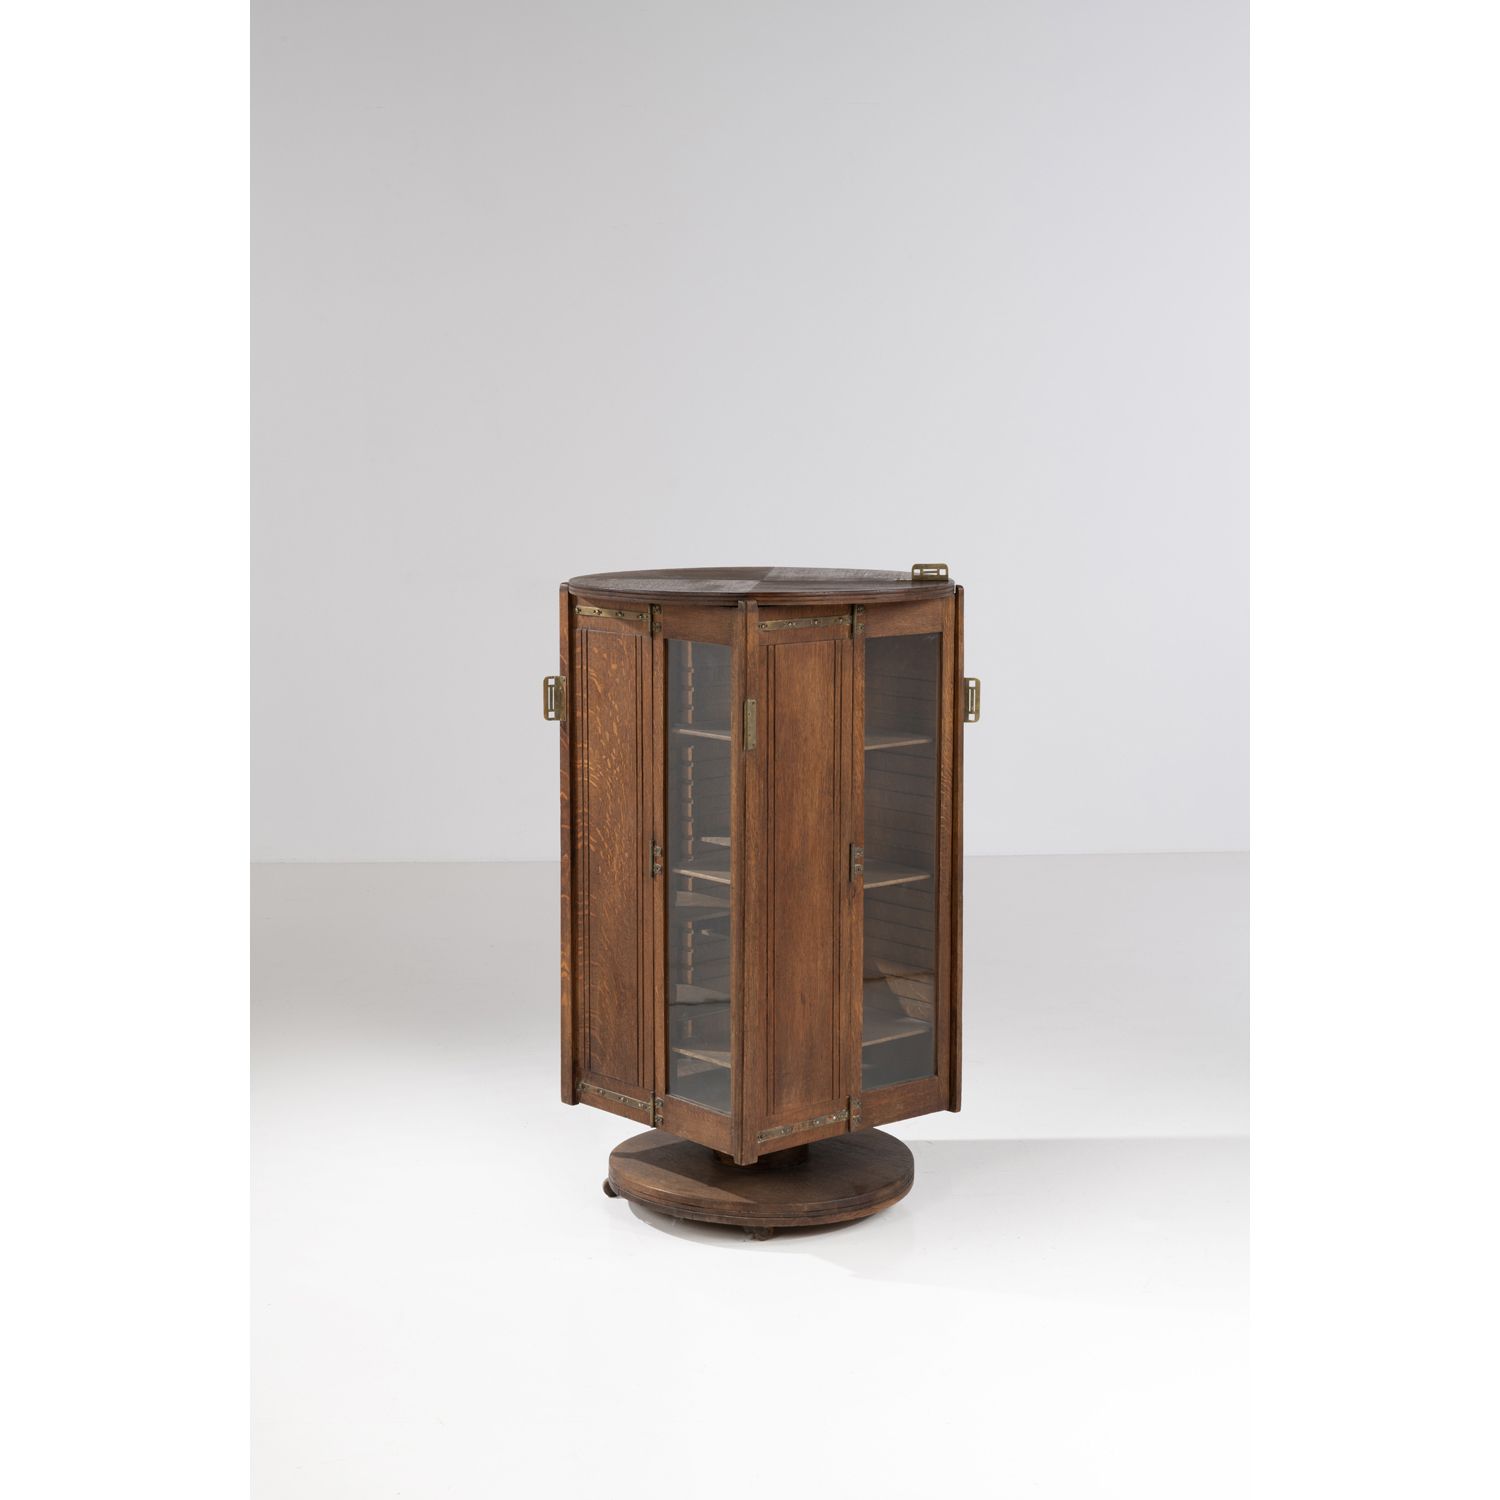 Null 古斯塔夫-塞鲁里耶-波维(1858-1910)

伽玛

旋转式书架

木材、金属和玻璃

1905年左右创建的模型

高113.5 × 直径78厘米&hellip;